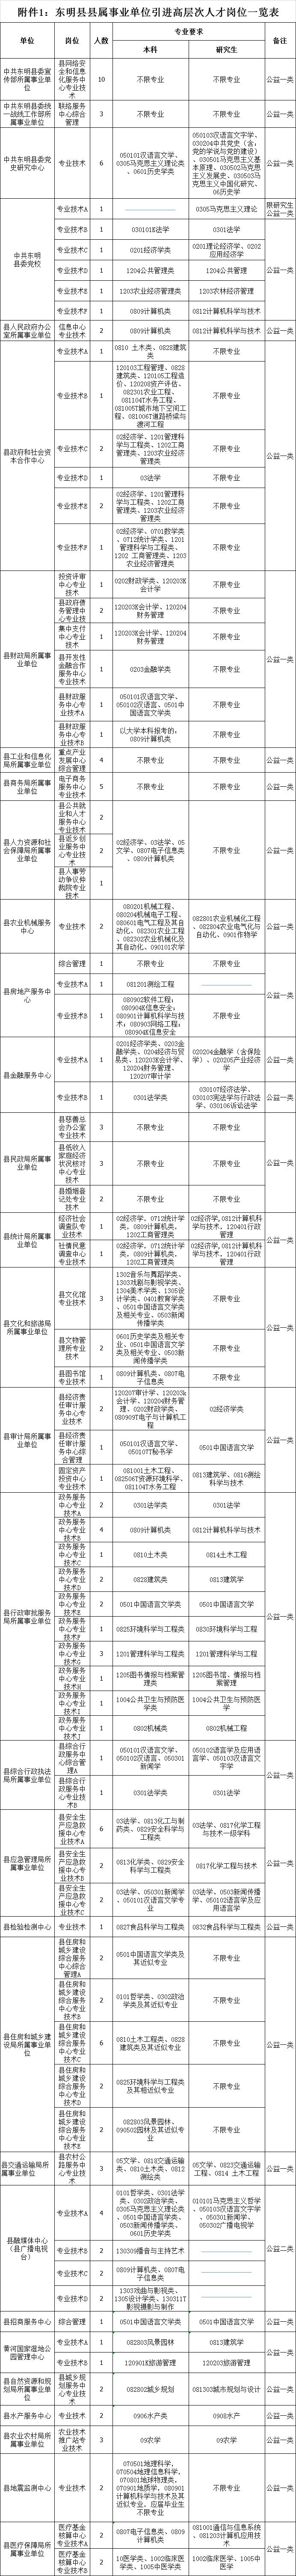 390名！东明县县属事业单位、鄄城县公安局、东明石化等一大波招聘来了